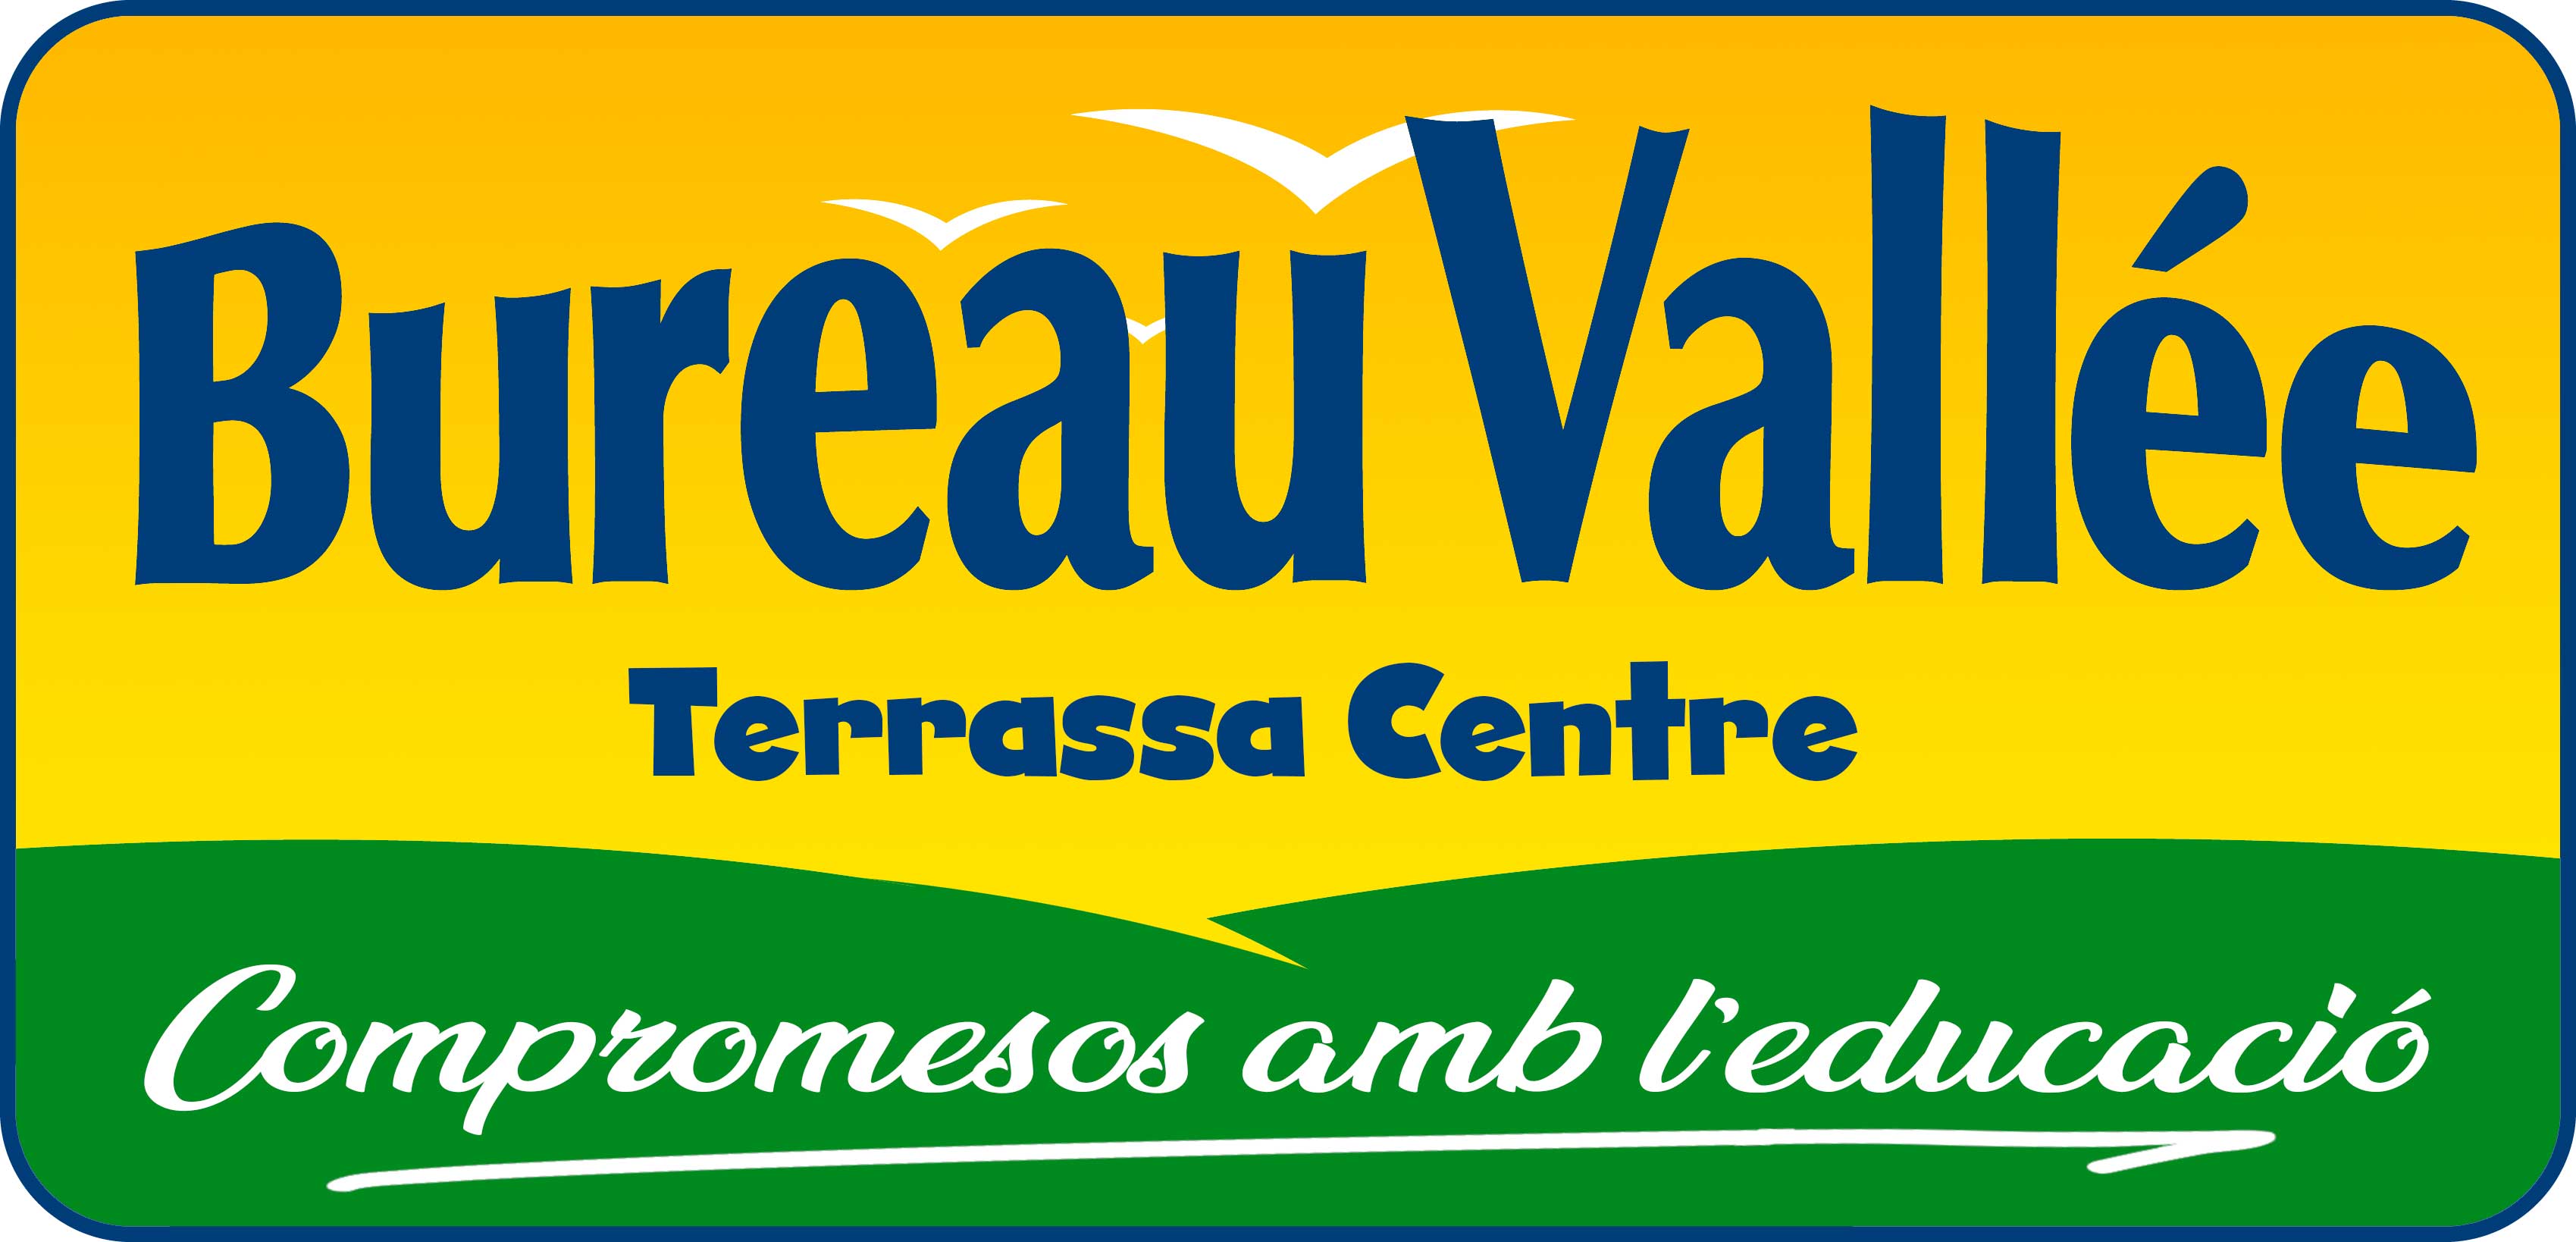 Bureau Vallée Terrassa Centre